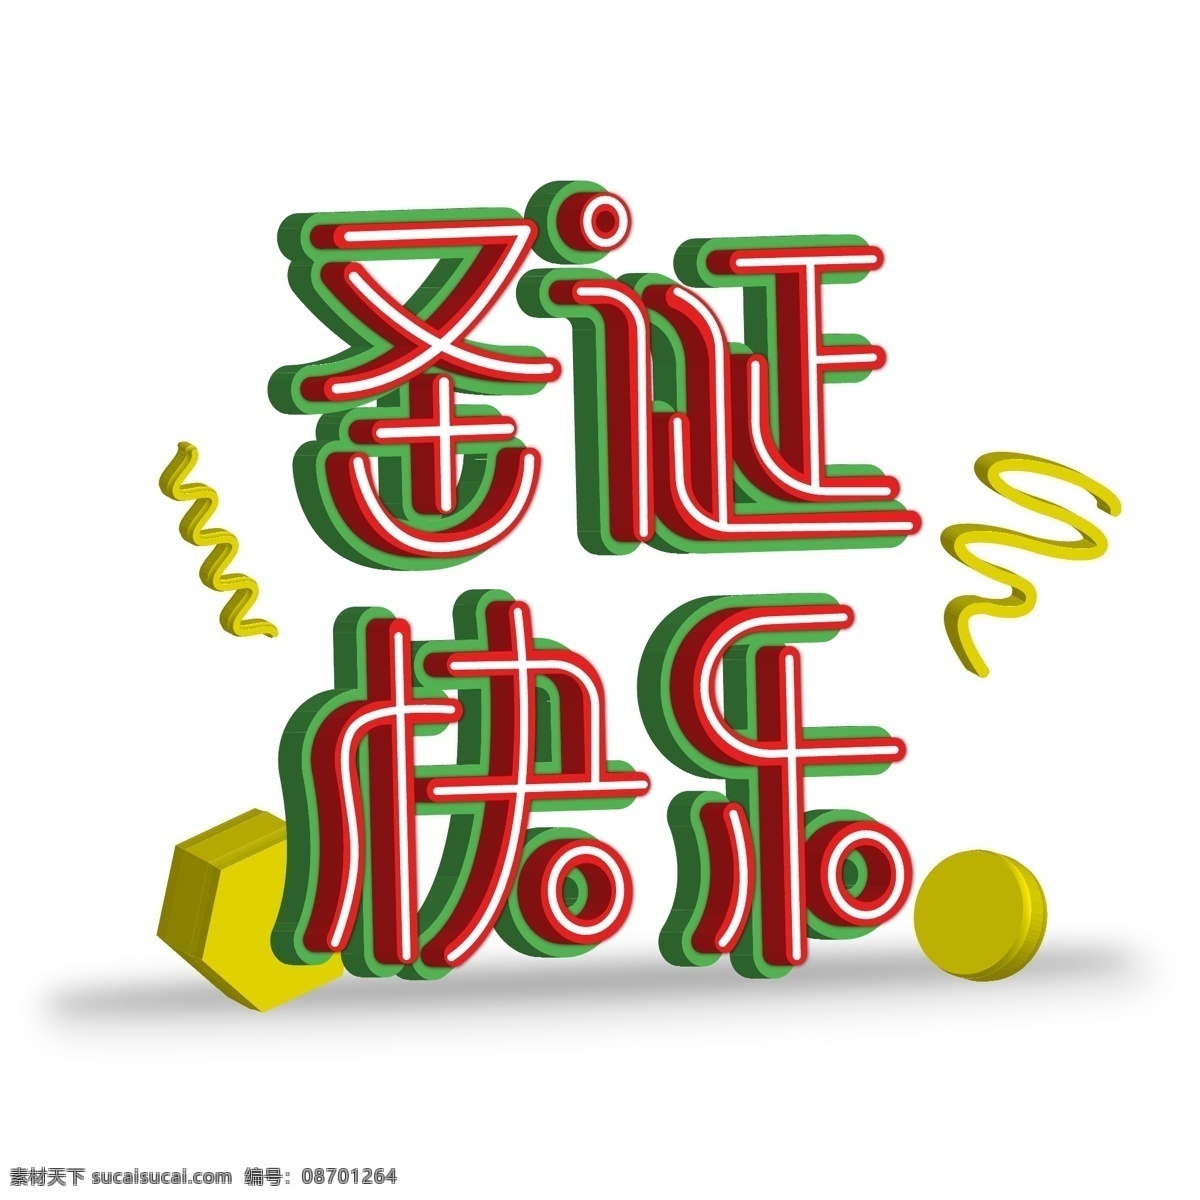 圣诞快乐 立体 字 字体 创意设计 立体字 圣诞祝福语 装饰 圣诞海报